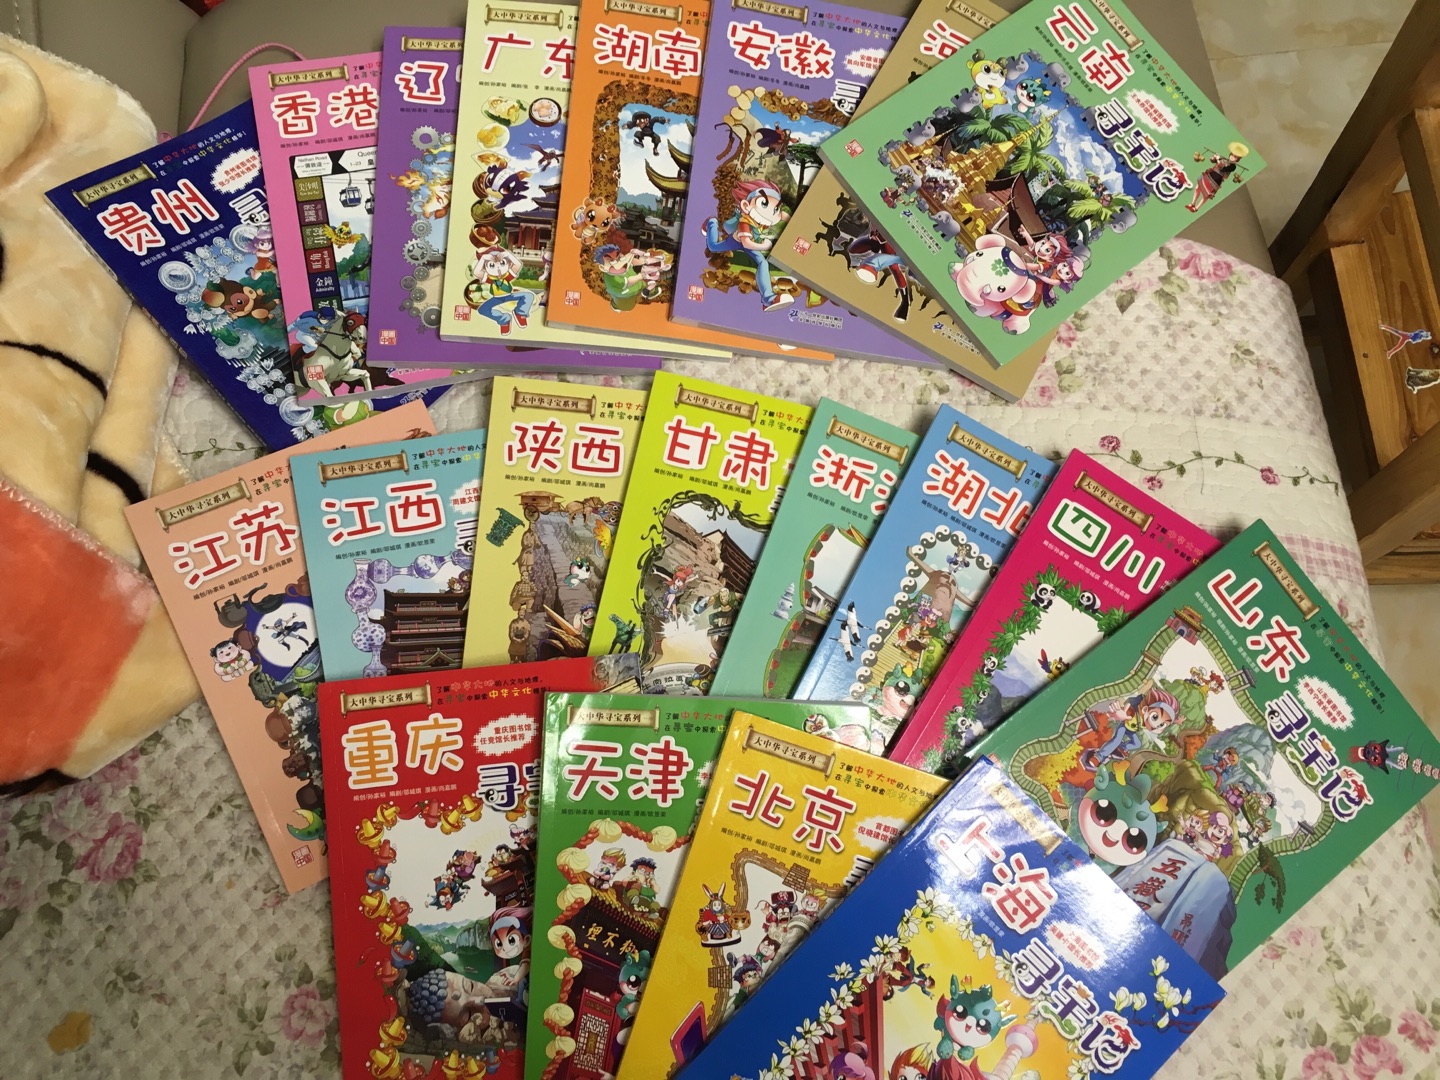 孩子期中考试不错，决定送他一套《大中华寻宝记》丛书。漫画和中华人文地理知识融合为一，通俗易懂。物流很快，满意。